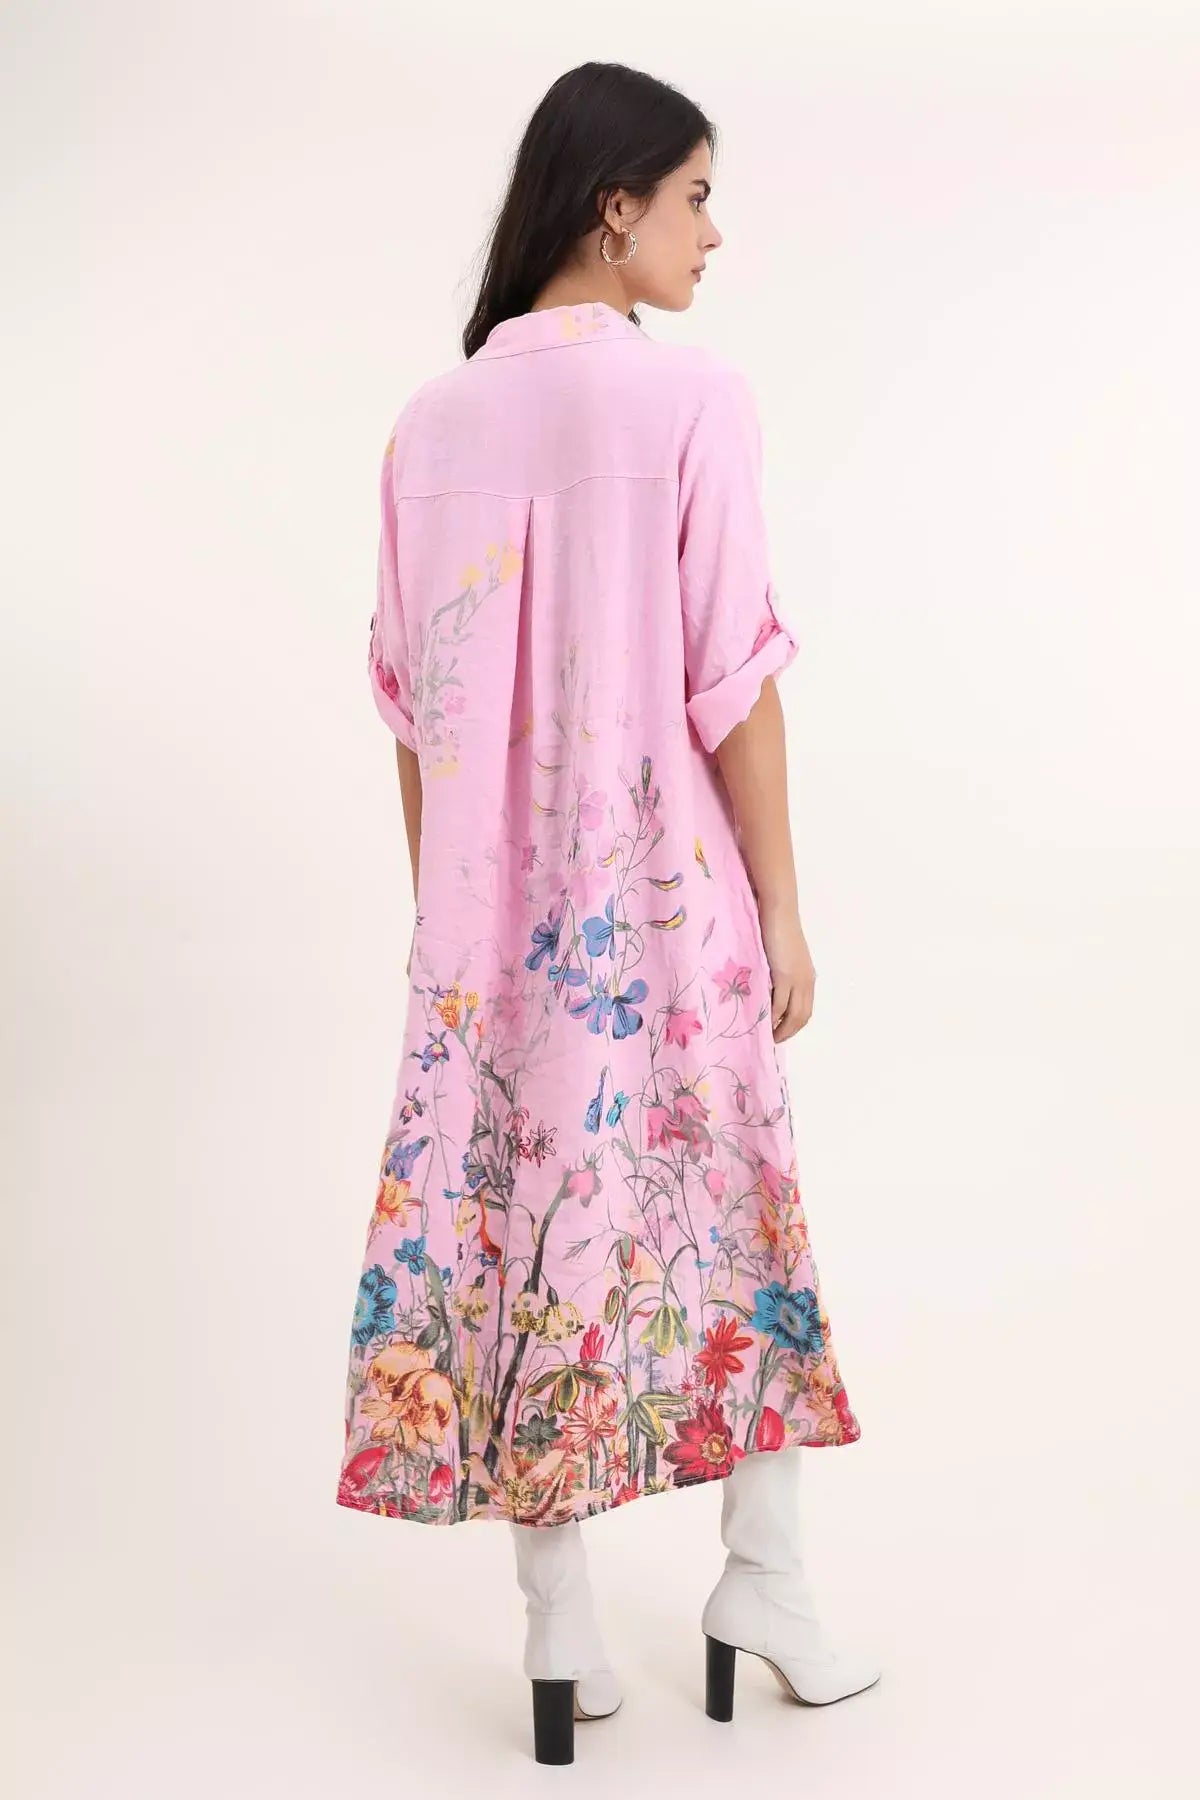 RESTOCK SOON - Floral Linen Button Up Dress